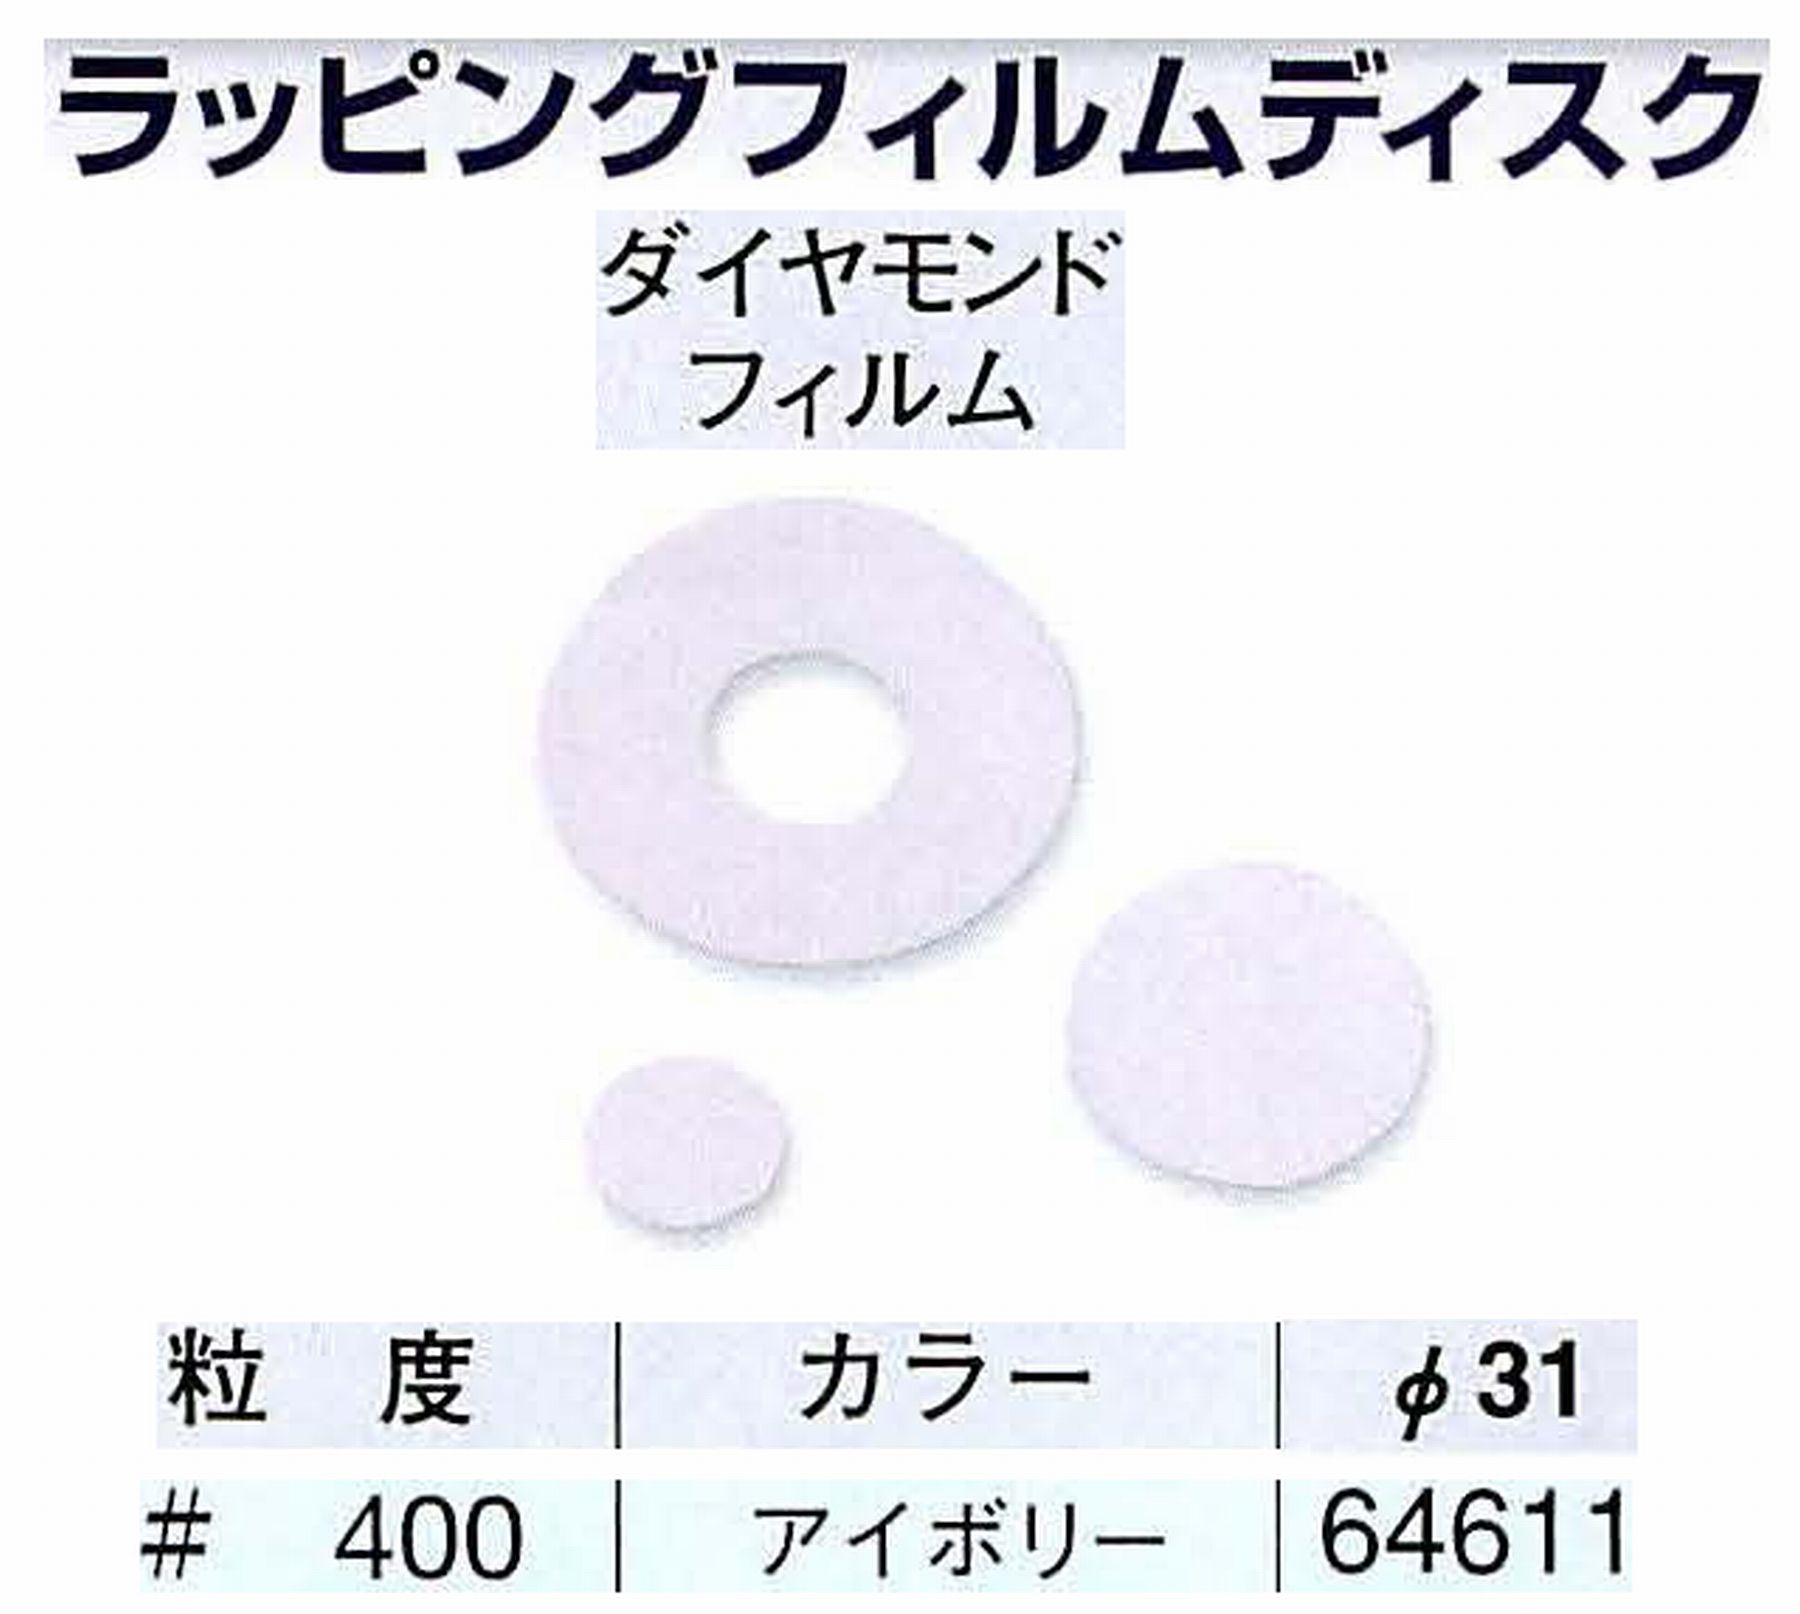 ナカニシ/NAKANISHI アングルグラインダ(電動・エアー) アングルアタッチメント専用工具 ラッピングフィルムディスク(ダイヤモンドフィルム) 64611